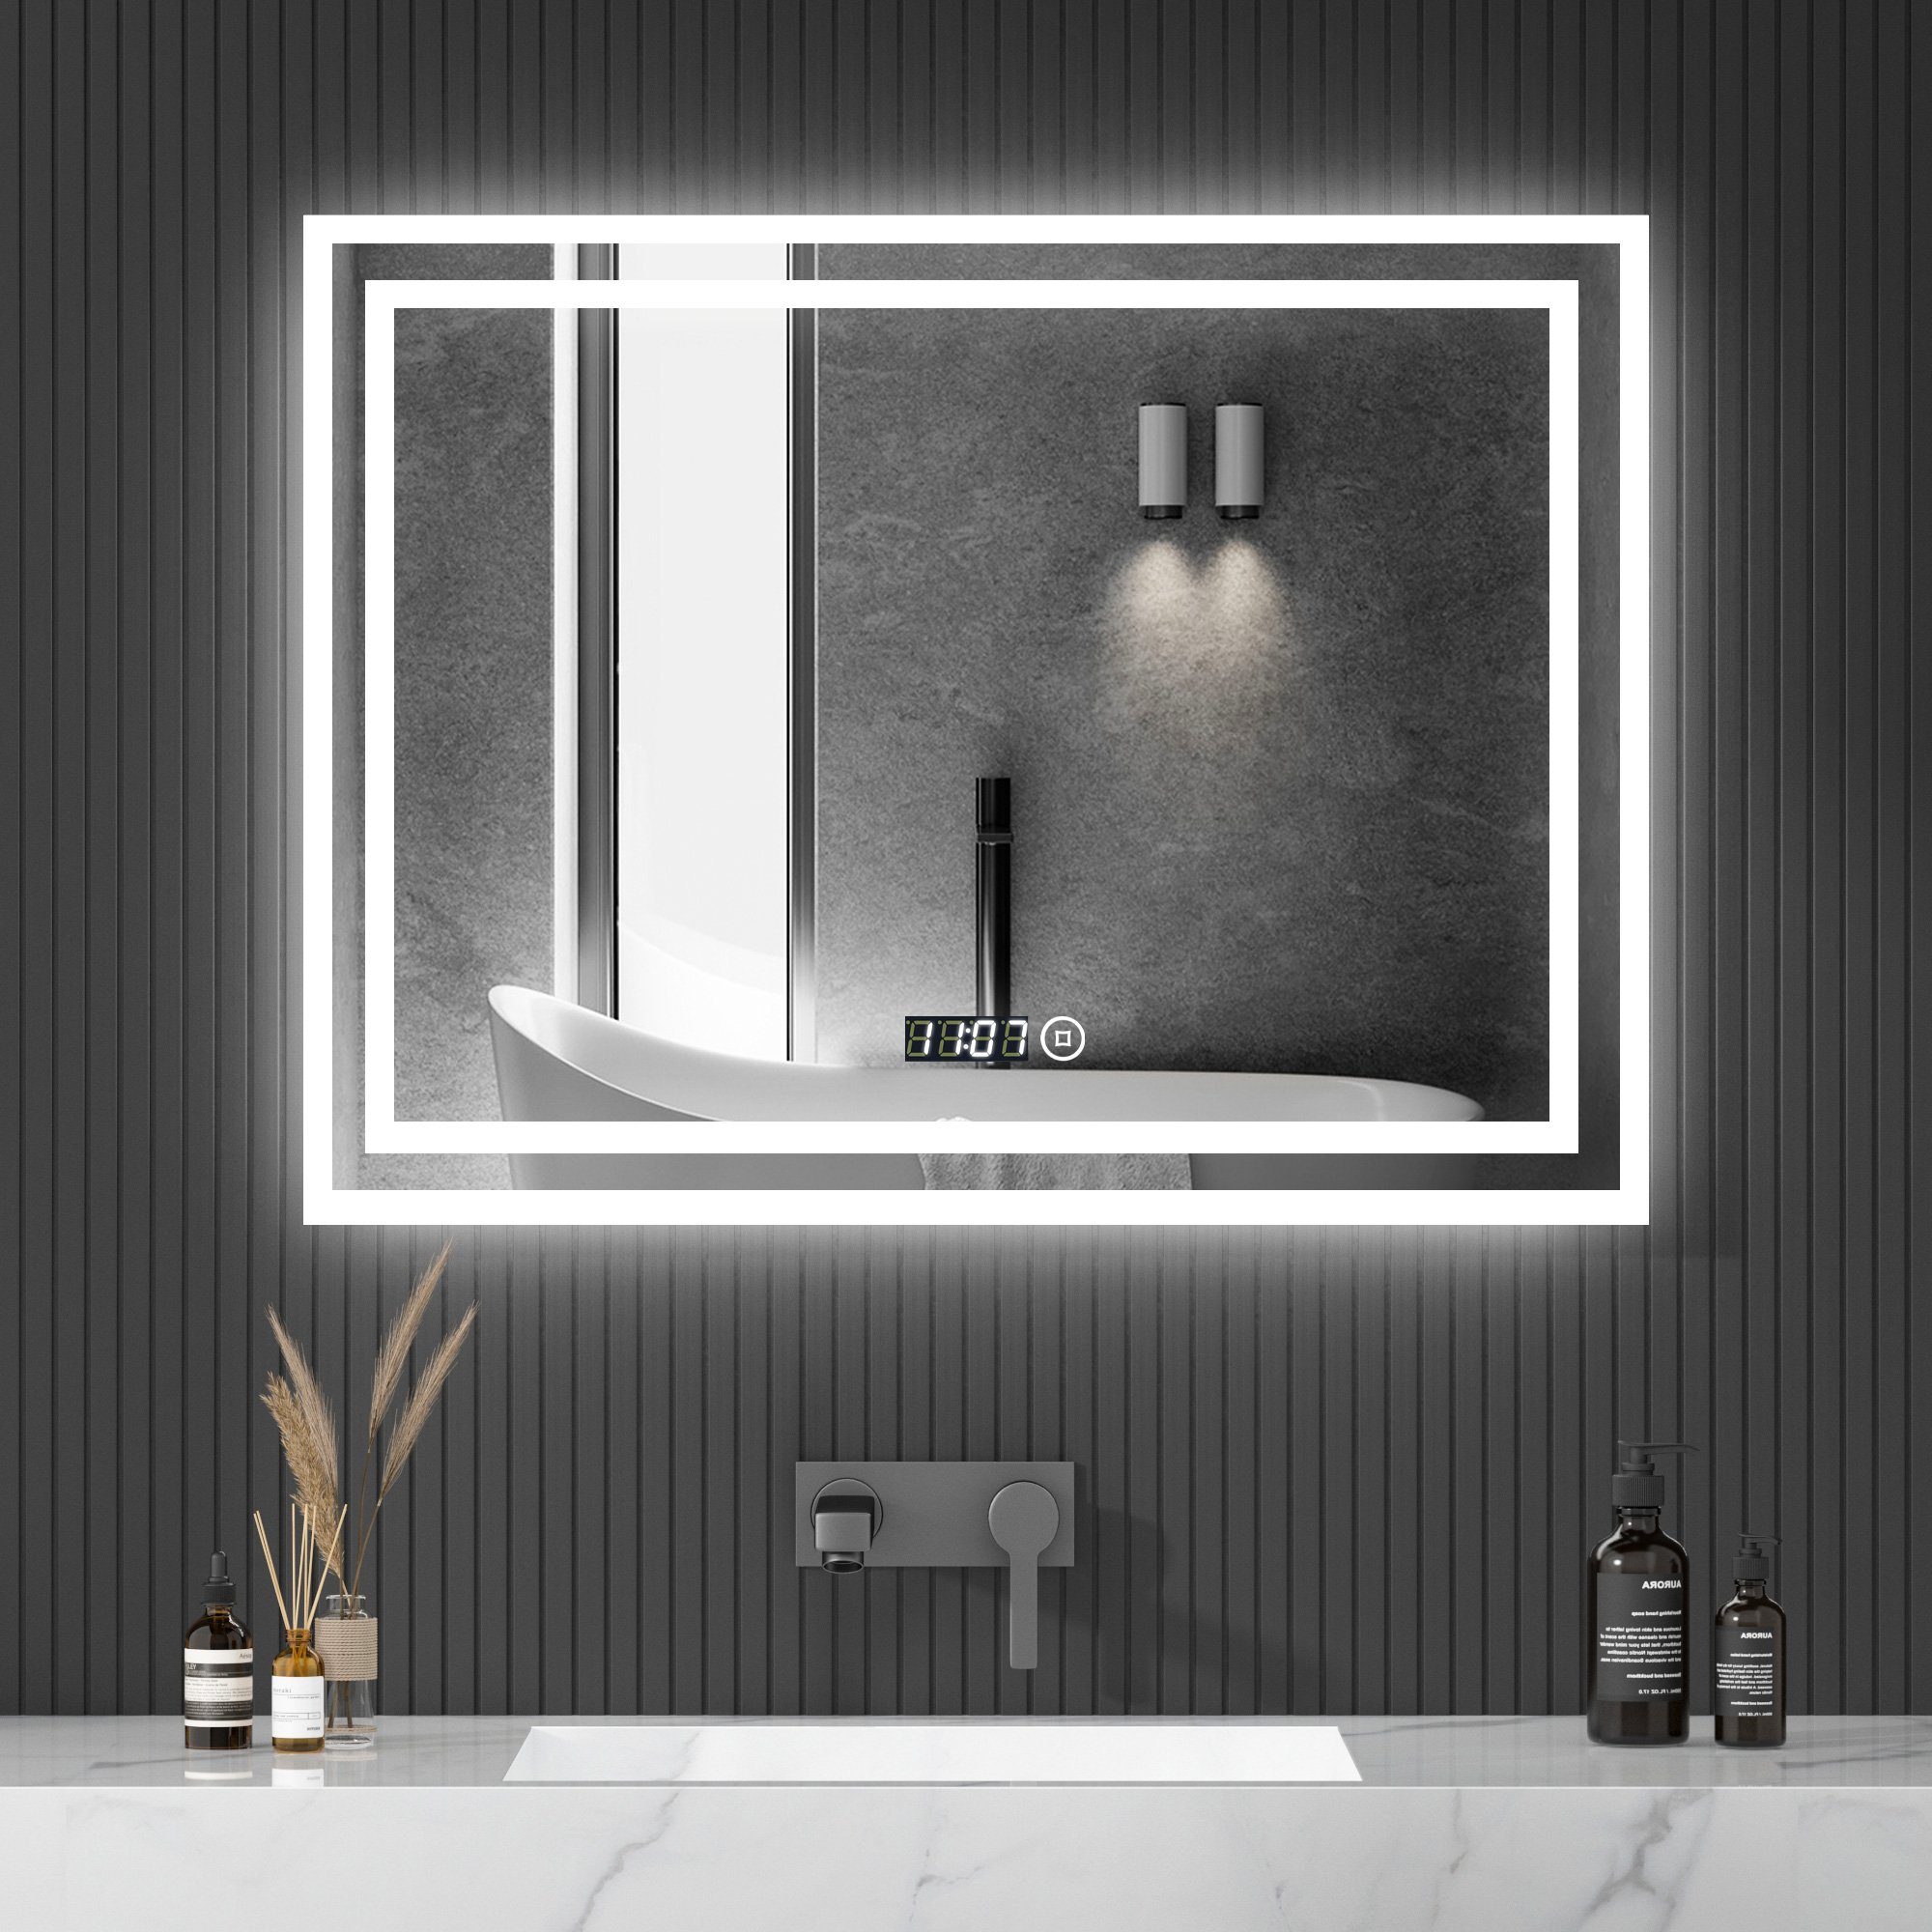 WDWRITTI Wandspiegel LED Spiegel Badspiegel 80x60 mit Uhr Touch Kalt/Neutral/Warmweiß (Dimmbar, Speicherfunktion), Energiesparende, IP44